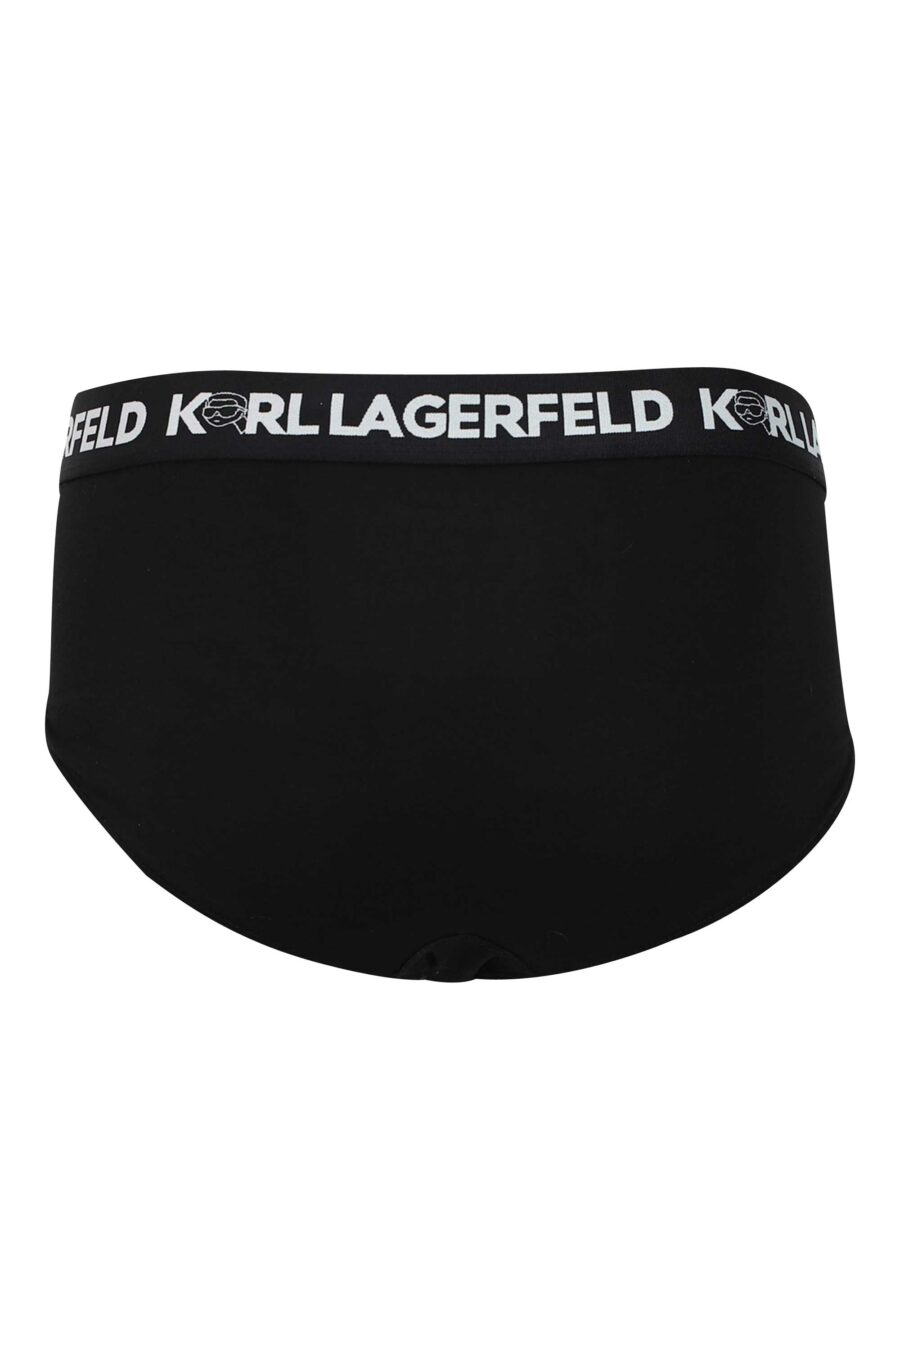 Pack de tres calzoncillos negros y blancos con logo "karl" en cinturilla - 8720744054627 4